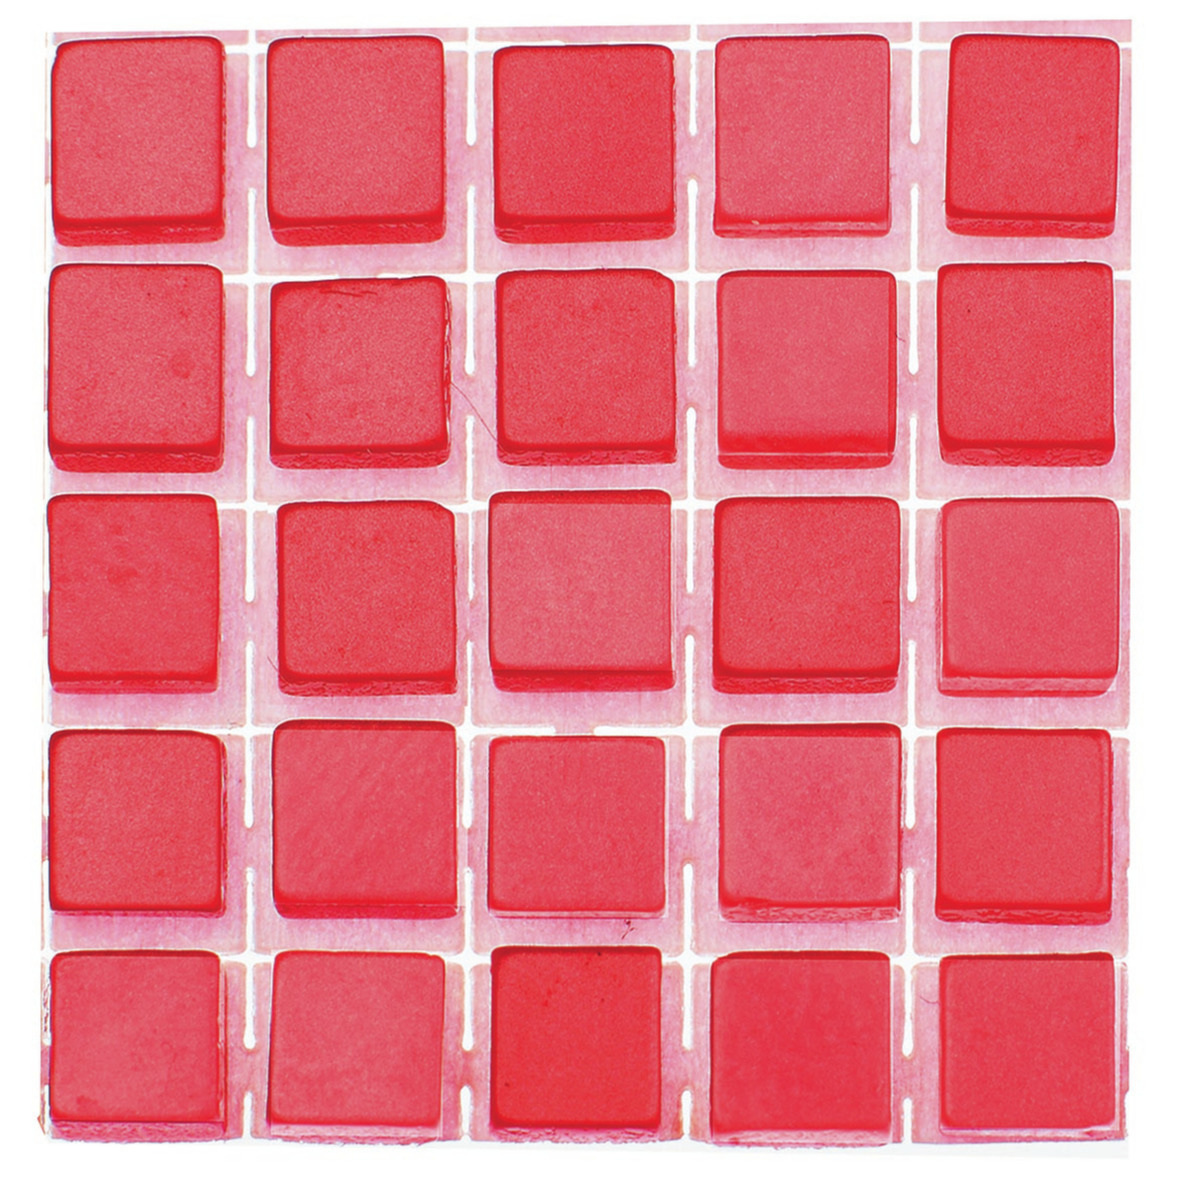 714x stuks mozaieken maken steentjes/tegels kleur rood 5 x 5 x 2 mm -